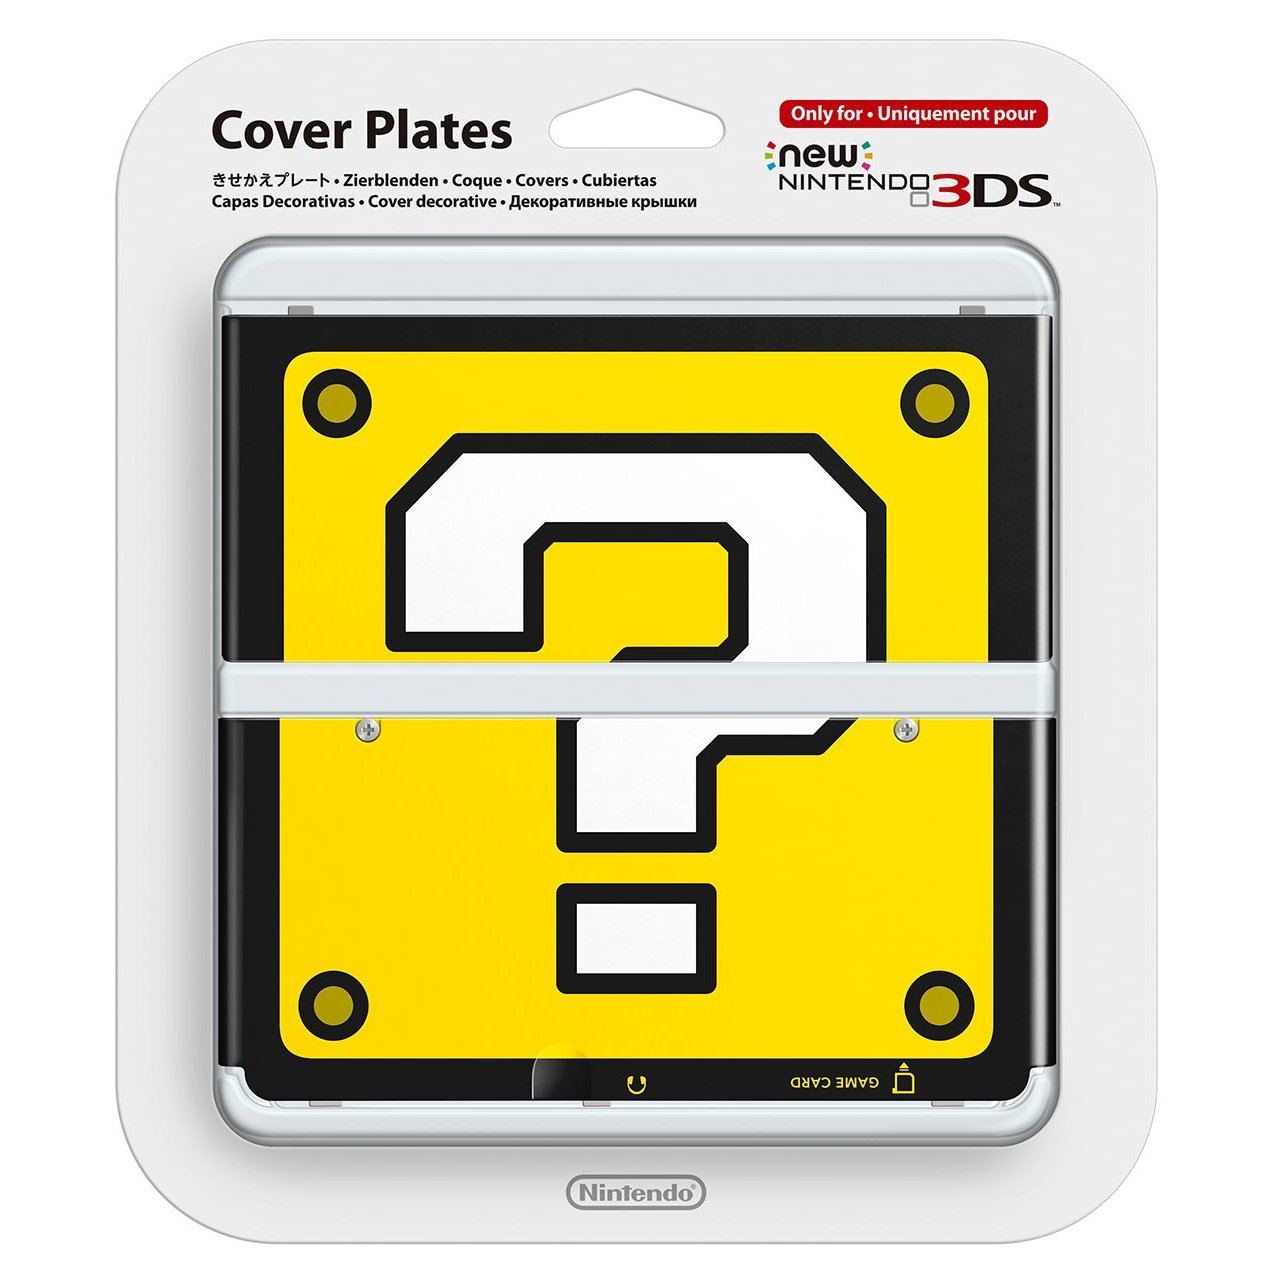 Nintendo блок. New Nintendo 3ds Cover Plates. Nintendo Cover Plate. 3ds Cover.